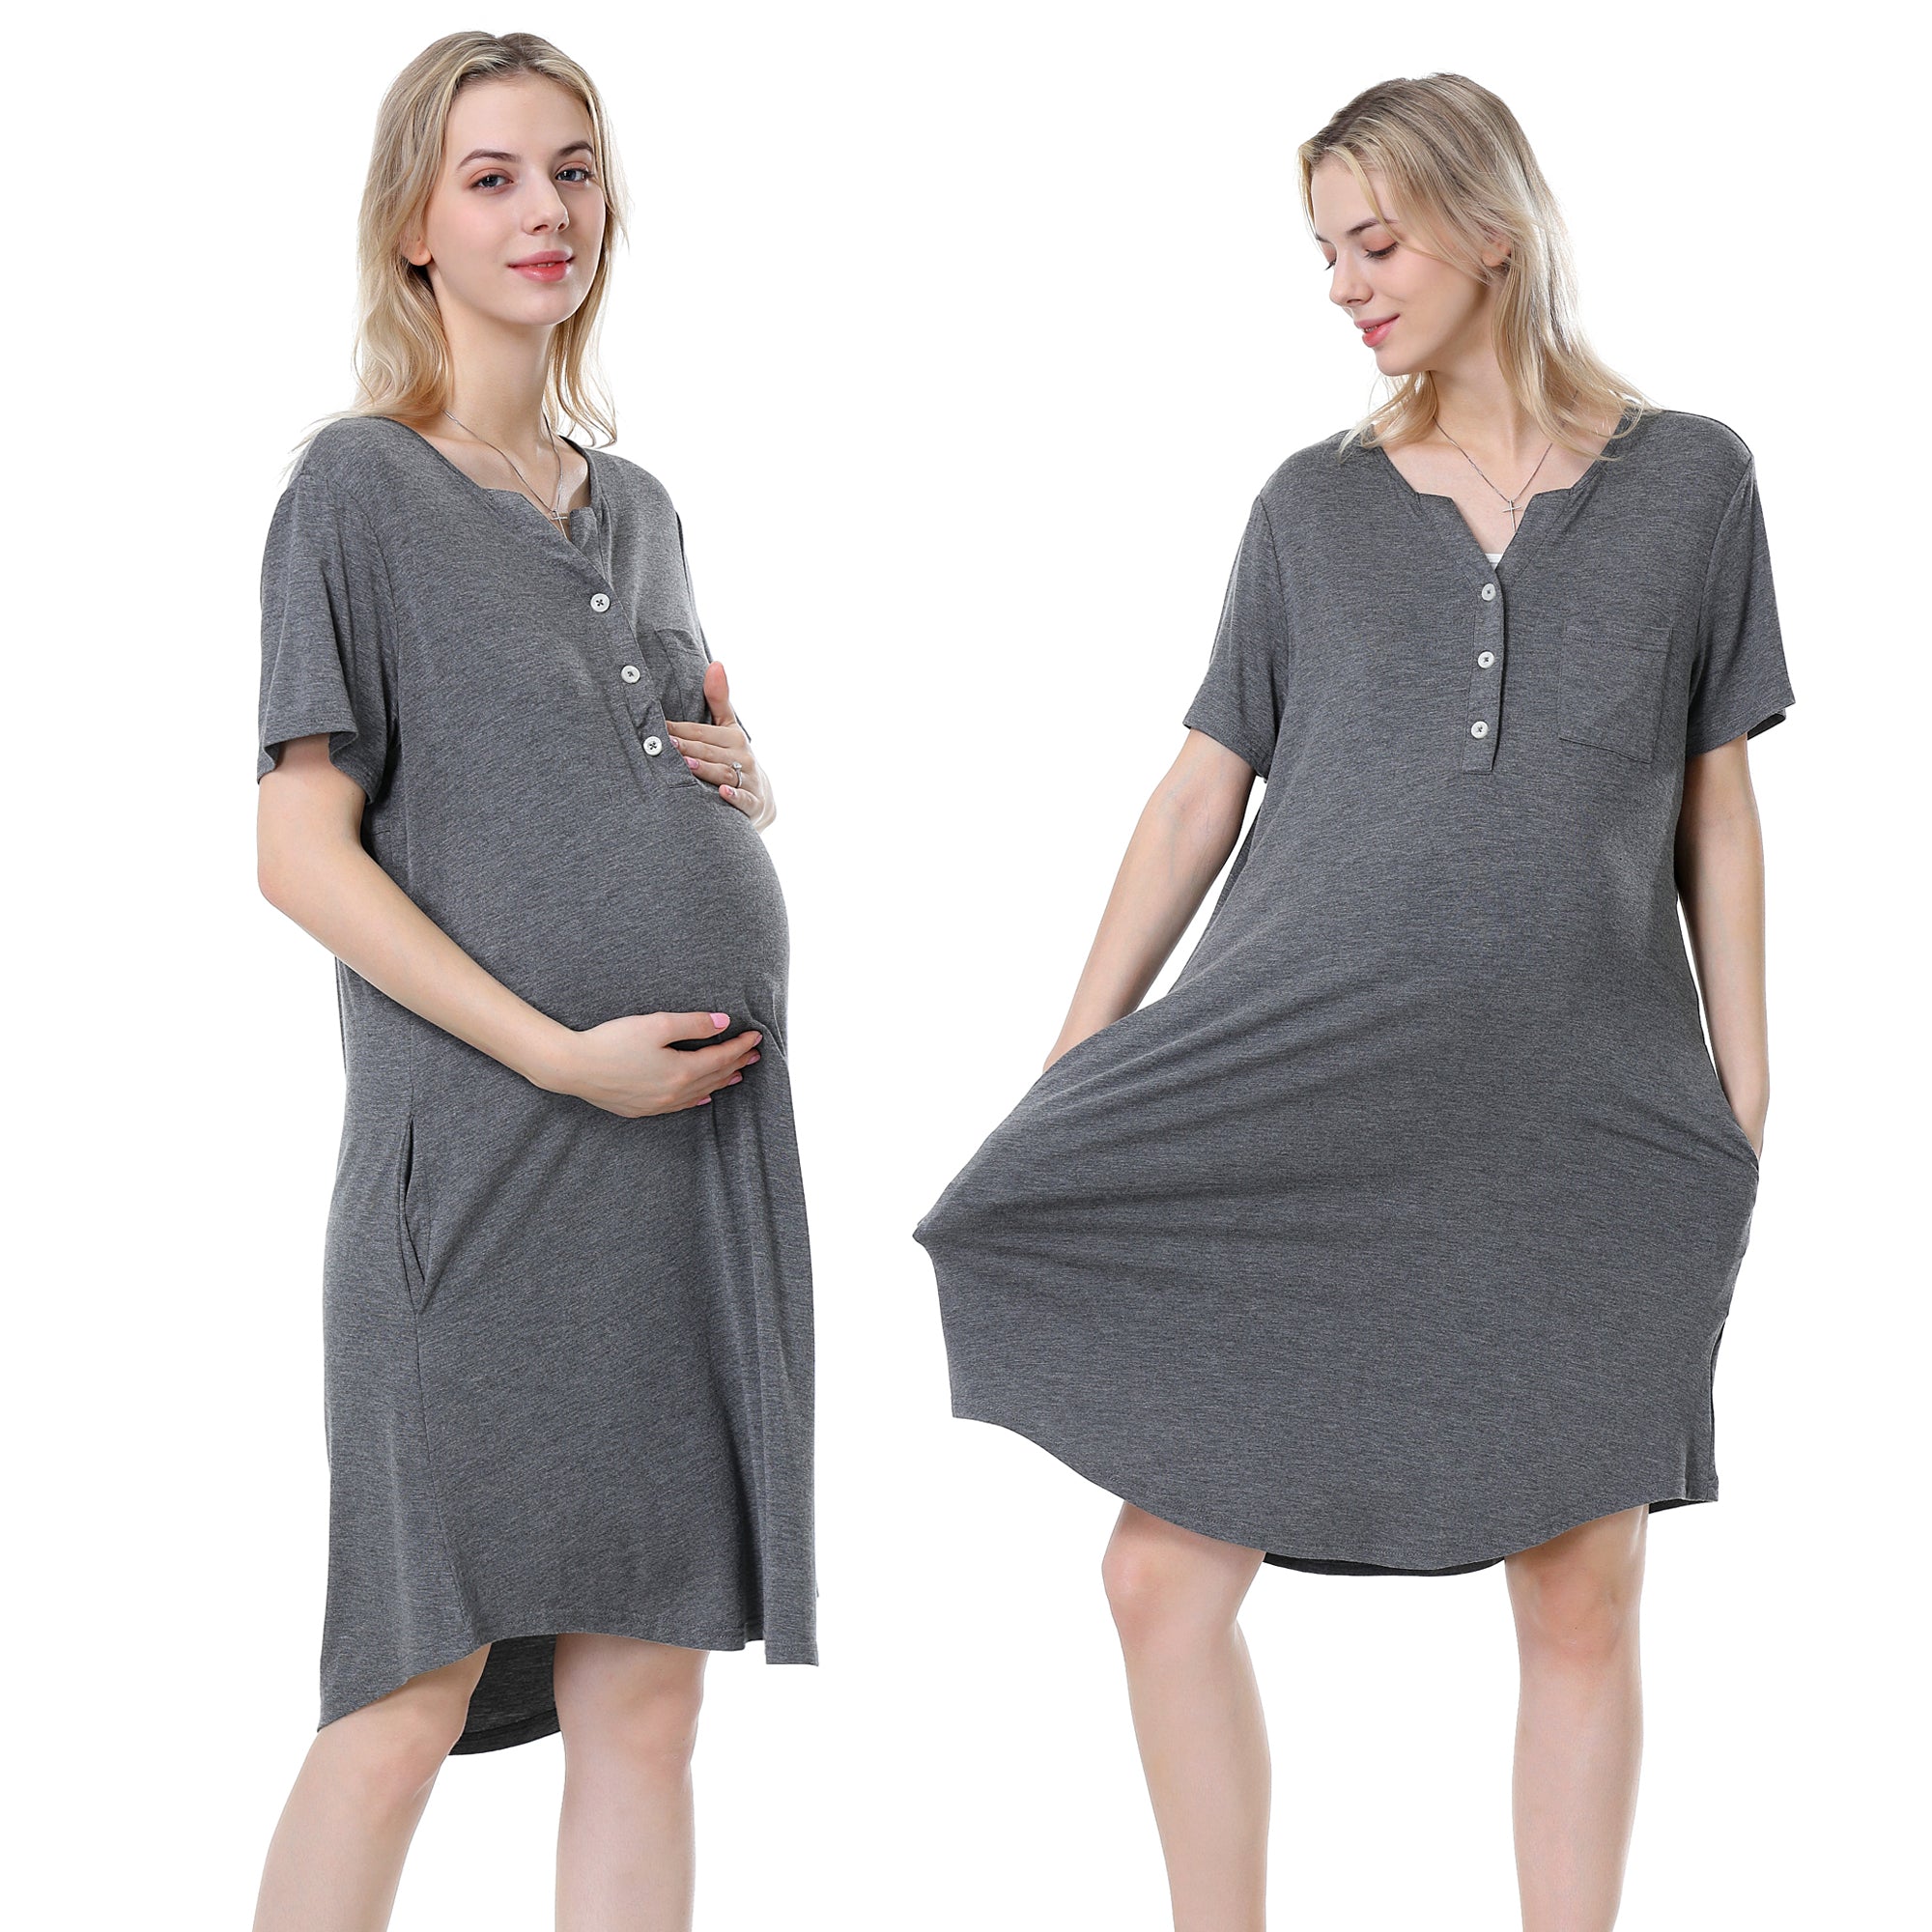 Nursing Sleepwear: Maternity Gowns, Nightwear & Nursing Dresses